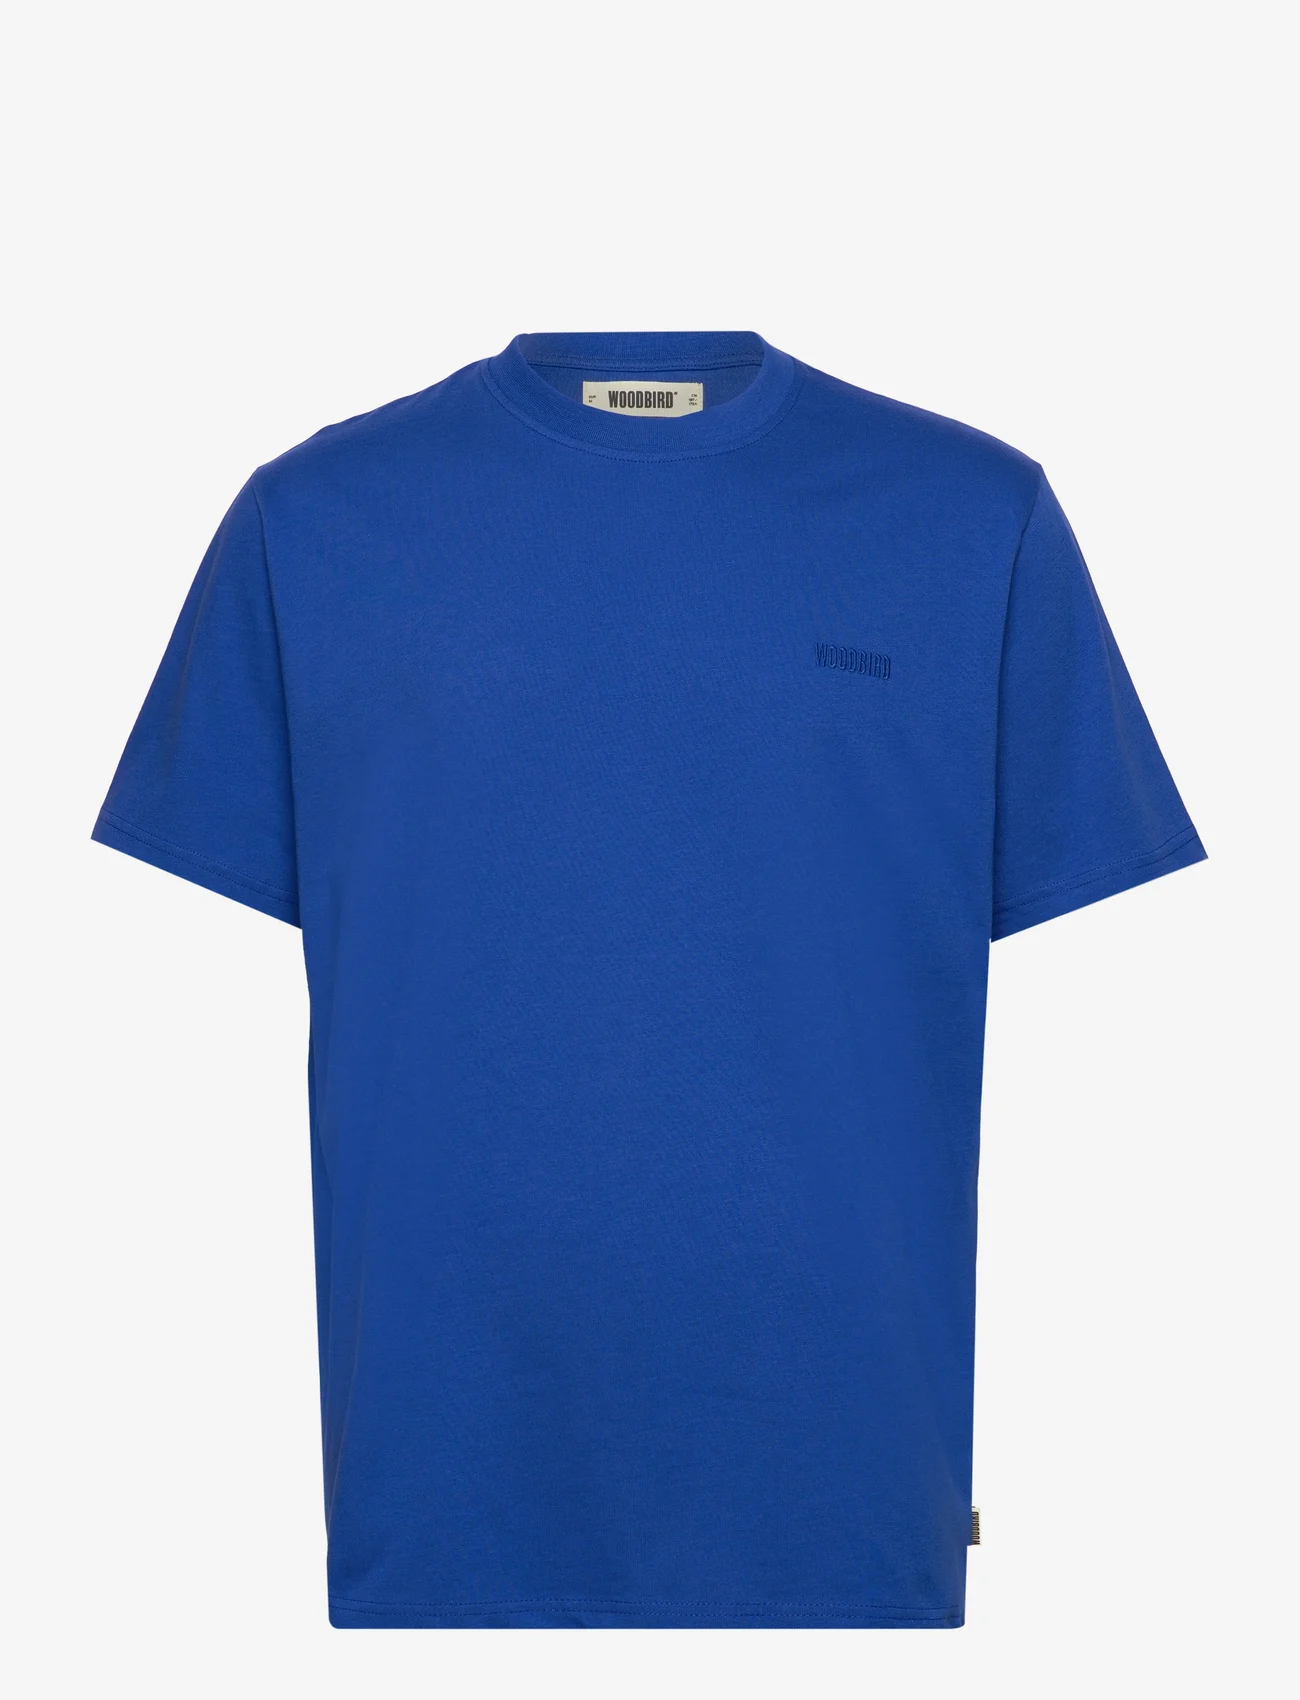 Woodbird - WBBaine Base tee - t-shirts - cobalt blue - 0